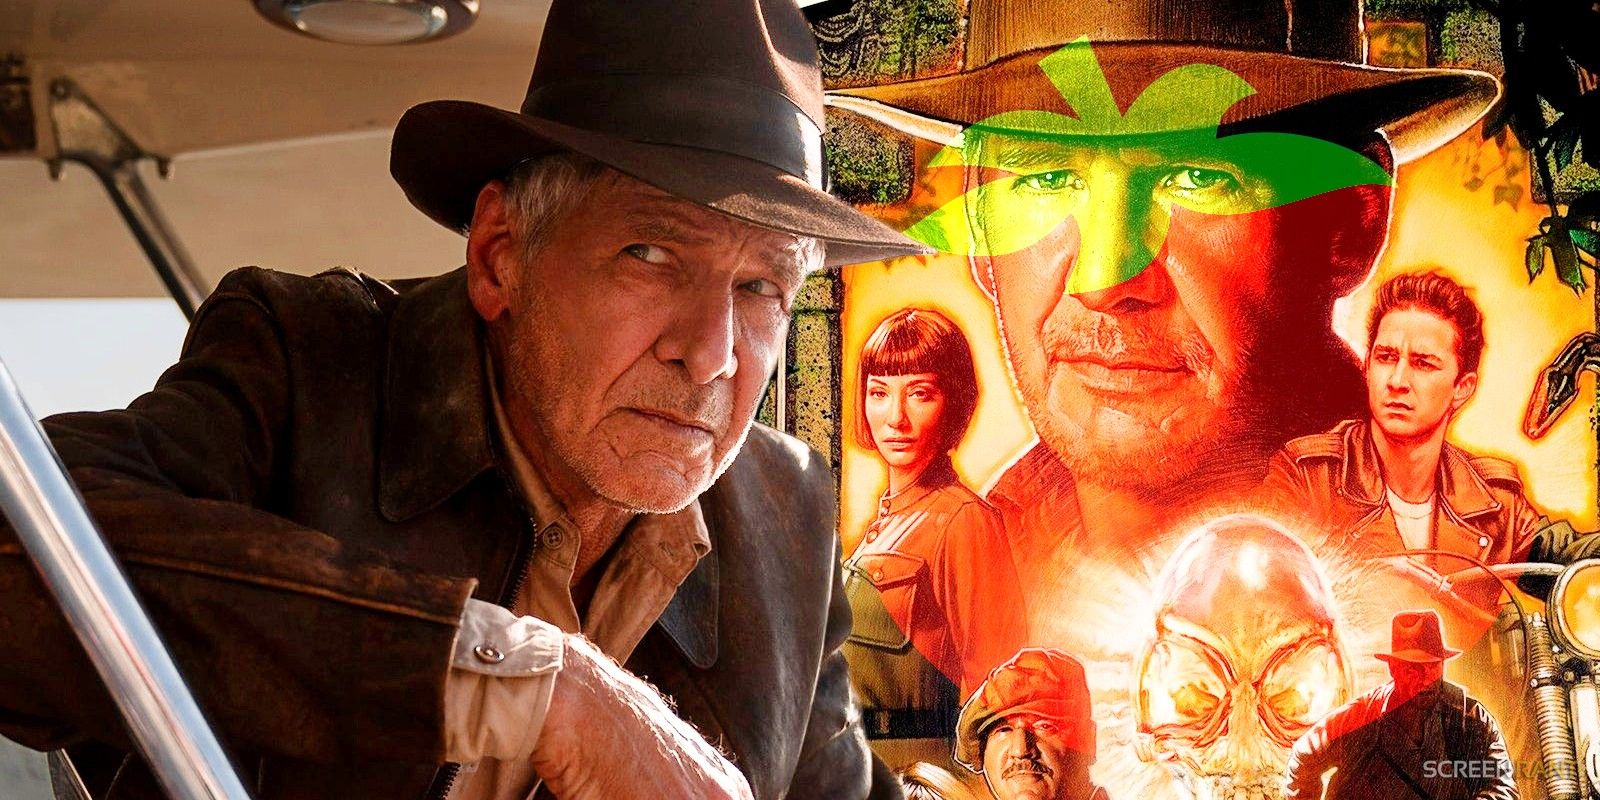 Indiana Jones 5 is ROTTEN. in 2023